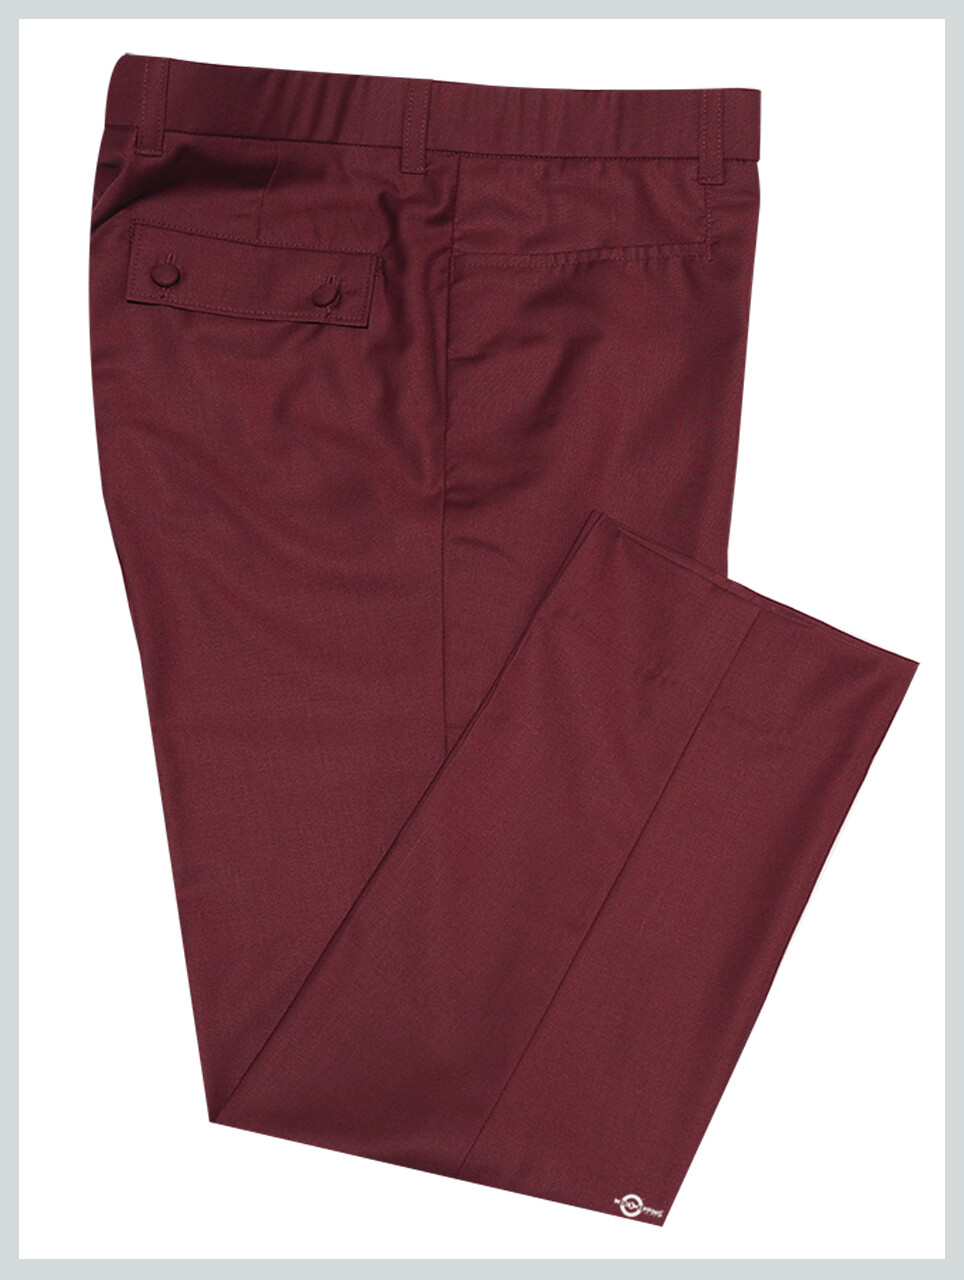 60's Style Trouser | Burgundy Trouser